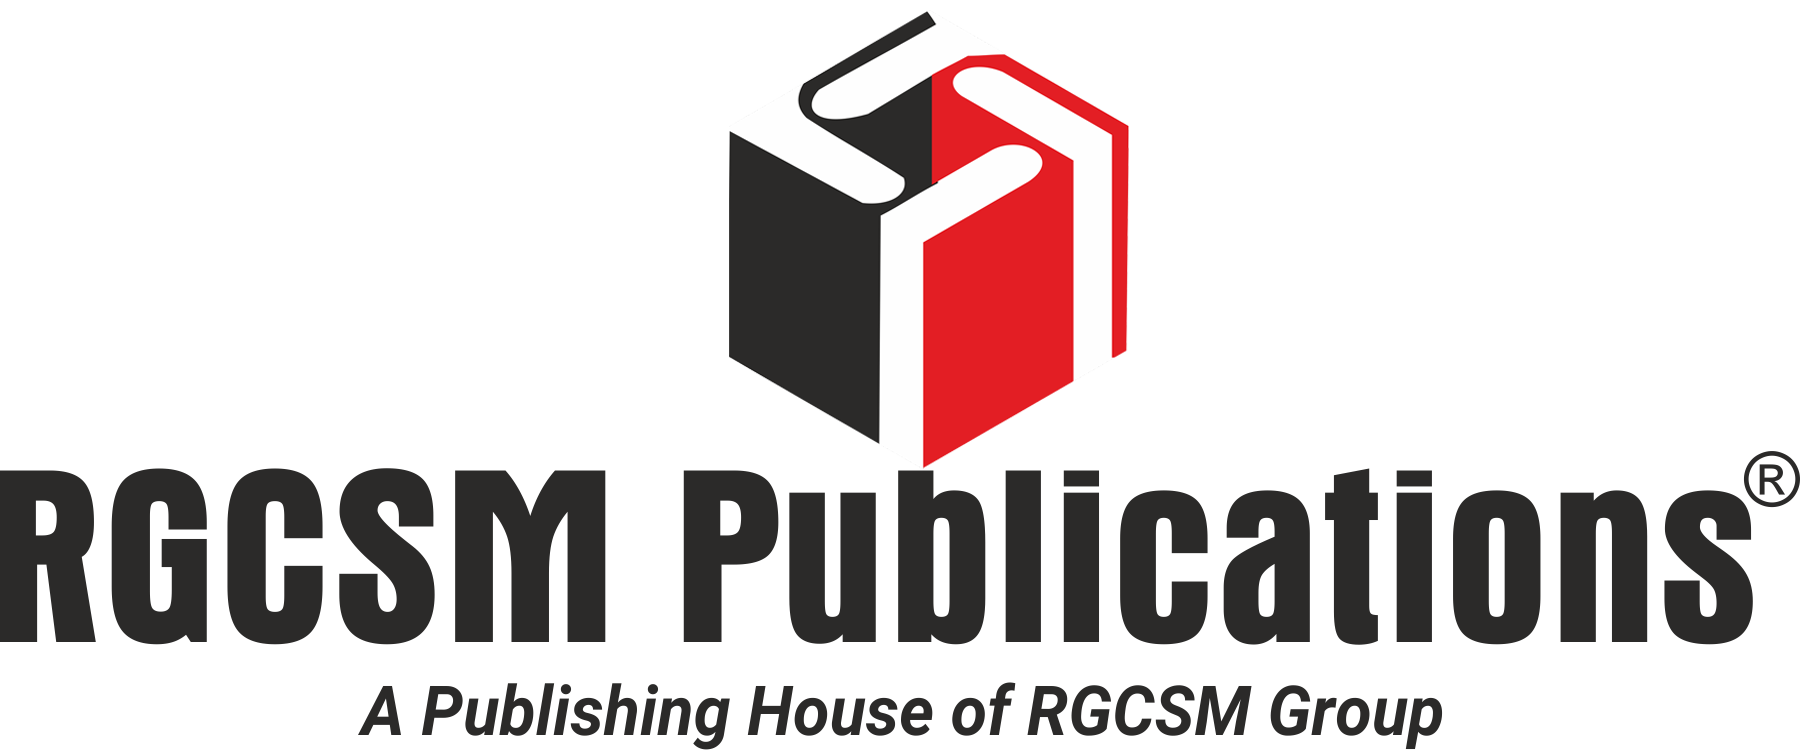 RGCSM PUBLICATIONS